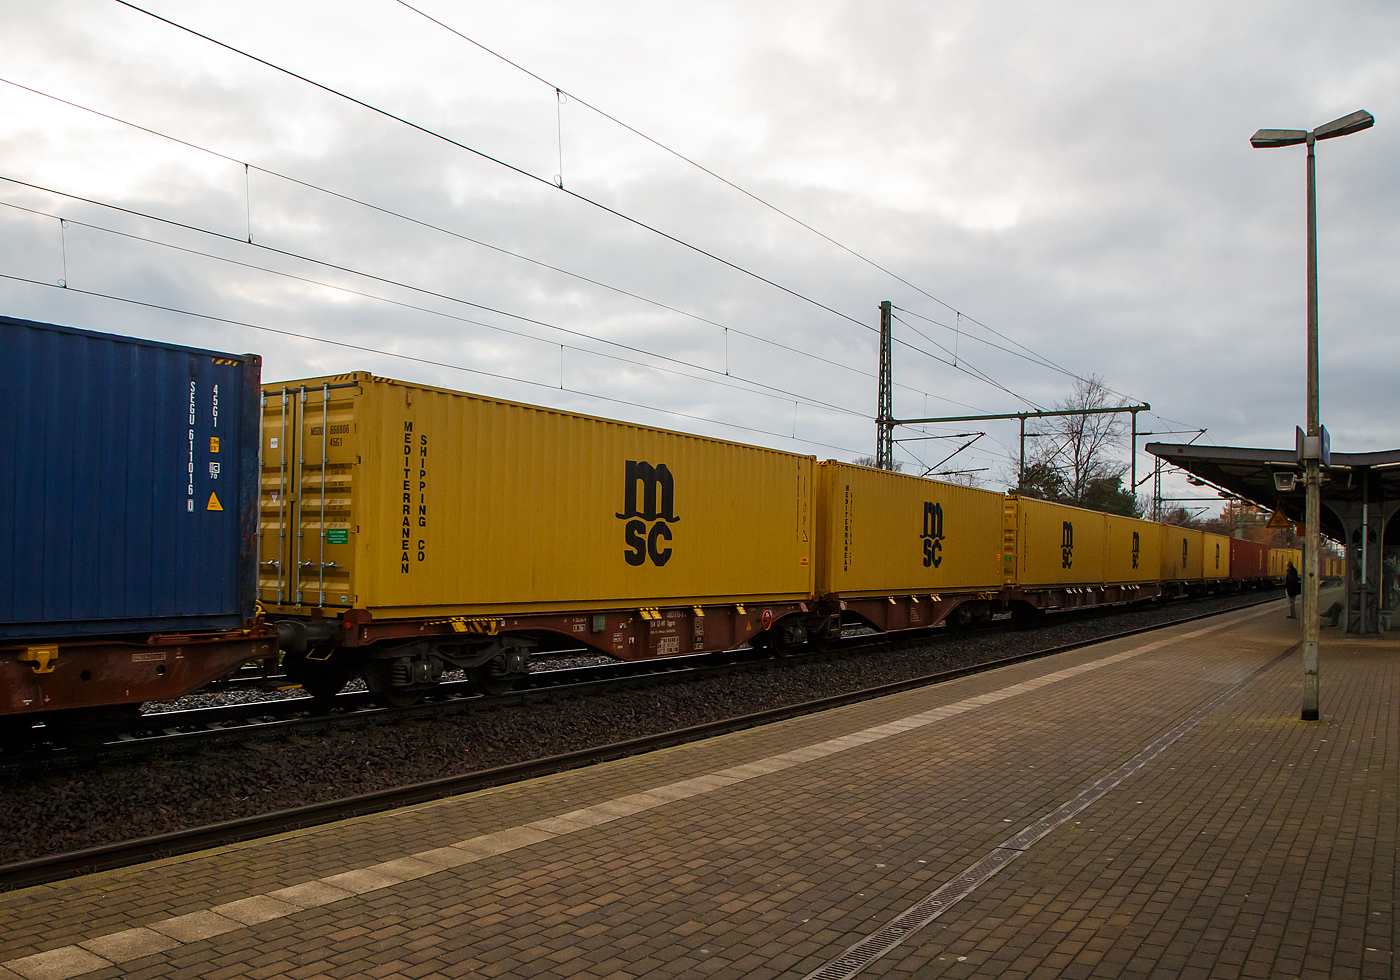 Hier sieht man den Unterschied der Gattung Sggrs (wie hier) und der Gattung Sggnss-XL (vorheriges Bild).....
6-achsiger Gelenk-Containertragwagen 33 54 4803 015-5 der Gattung Sggrs, der METRANS Rail s.r.o. (Prag / Praha), am 07.12.2022 im Zugverband, beladen mit zwei 40ft-Containern bei einer Zugdurchfahrt in Dresden-Strehlen.

Diese Wagen haben eine Länge über Puffer von 26.290 mm

Gattungs-Kennbuchstaben bedeuten:
S  -  Drehgestell-Flachwagen in Sonderbauart
gg -  Für Container mit einer Gesamtlänge von höchstens bis 80 Fuß
r  -  Gelenkwagen
ss -  Höchstgeschwindigkeit 120 km/h (beladen)
